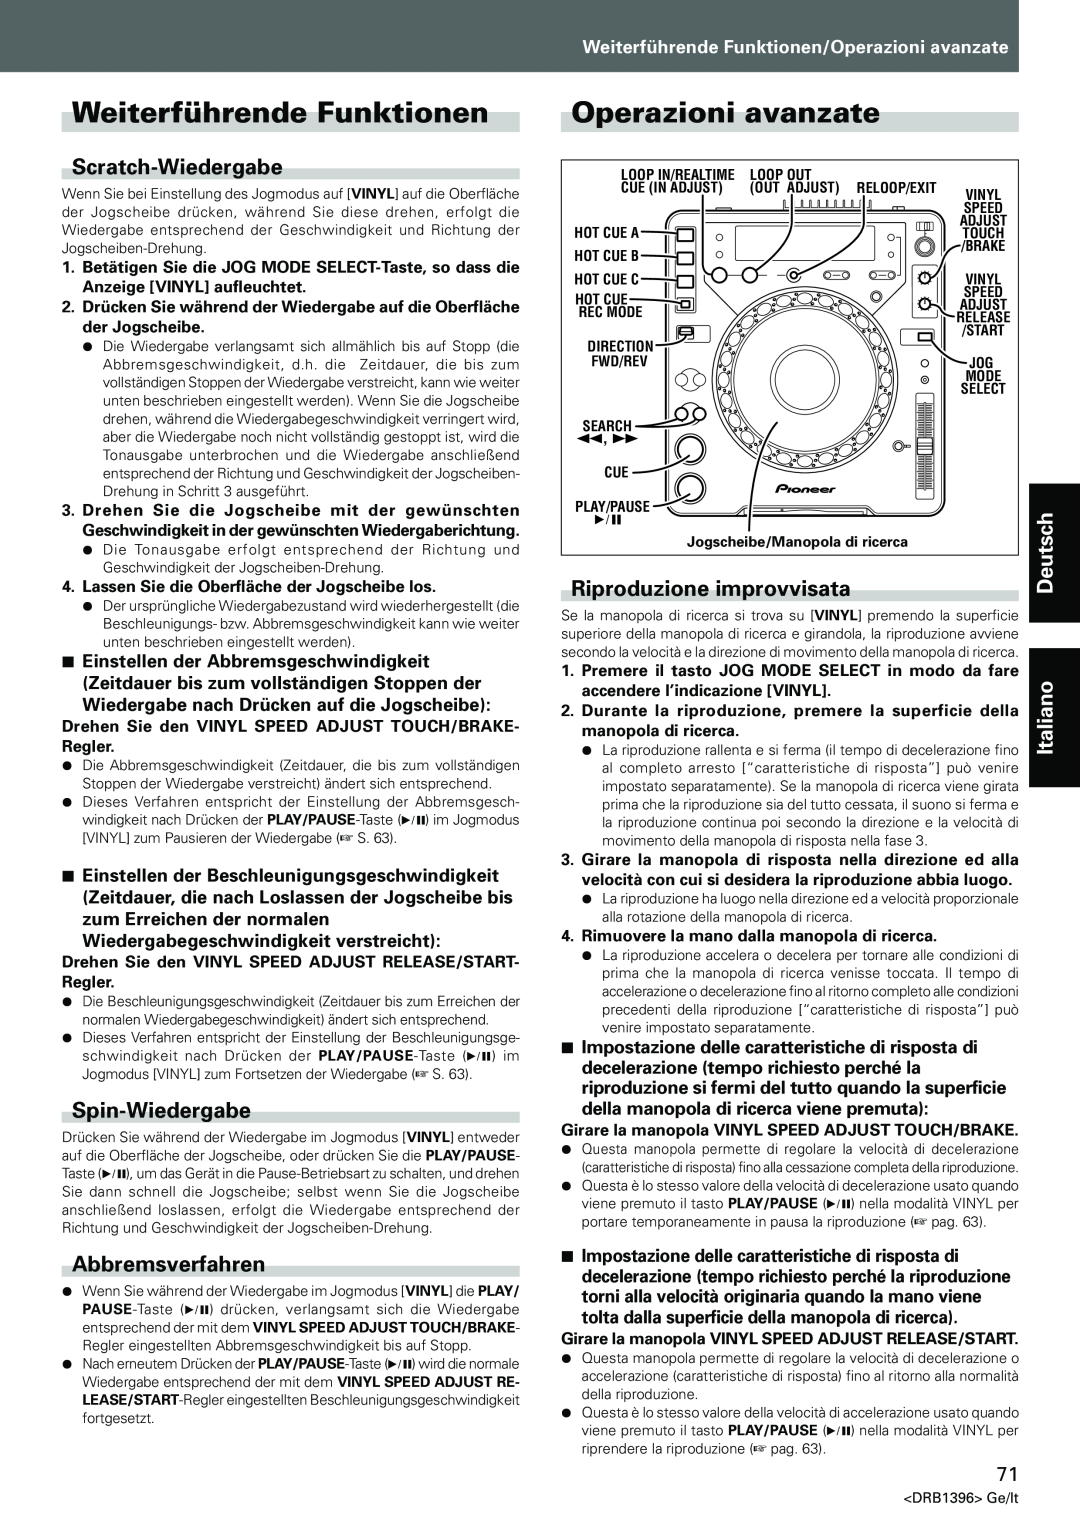 Pioneer CDJ-1000MK3 Weiterführende Funktionen, Operazioni avanzate, Scratch-Wiedergabe, Spin-Wiedergabe, Abbremsverfahren 